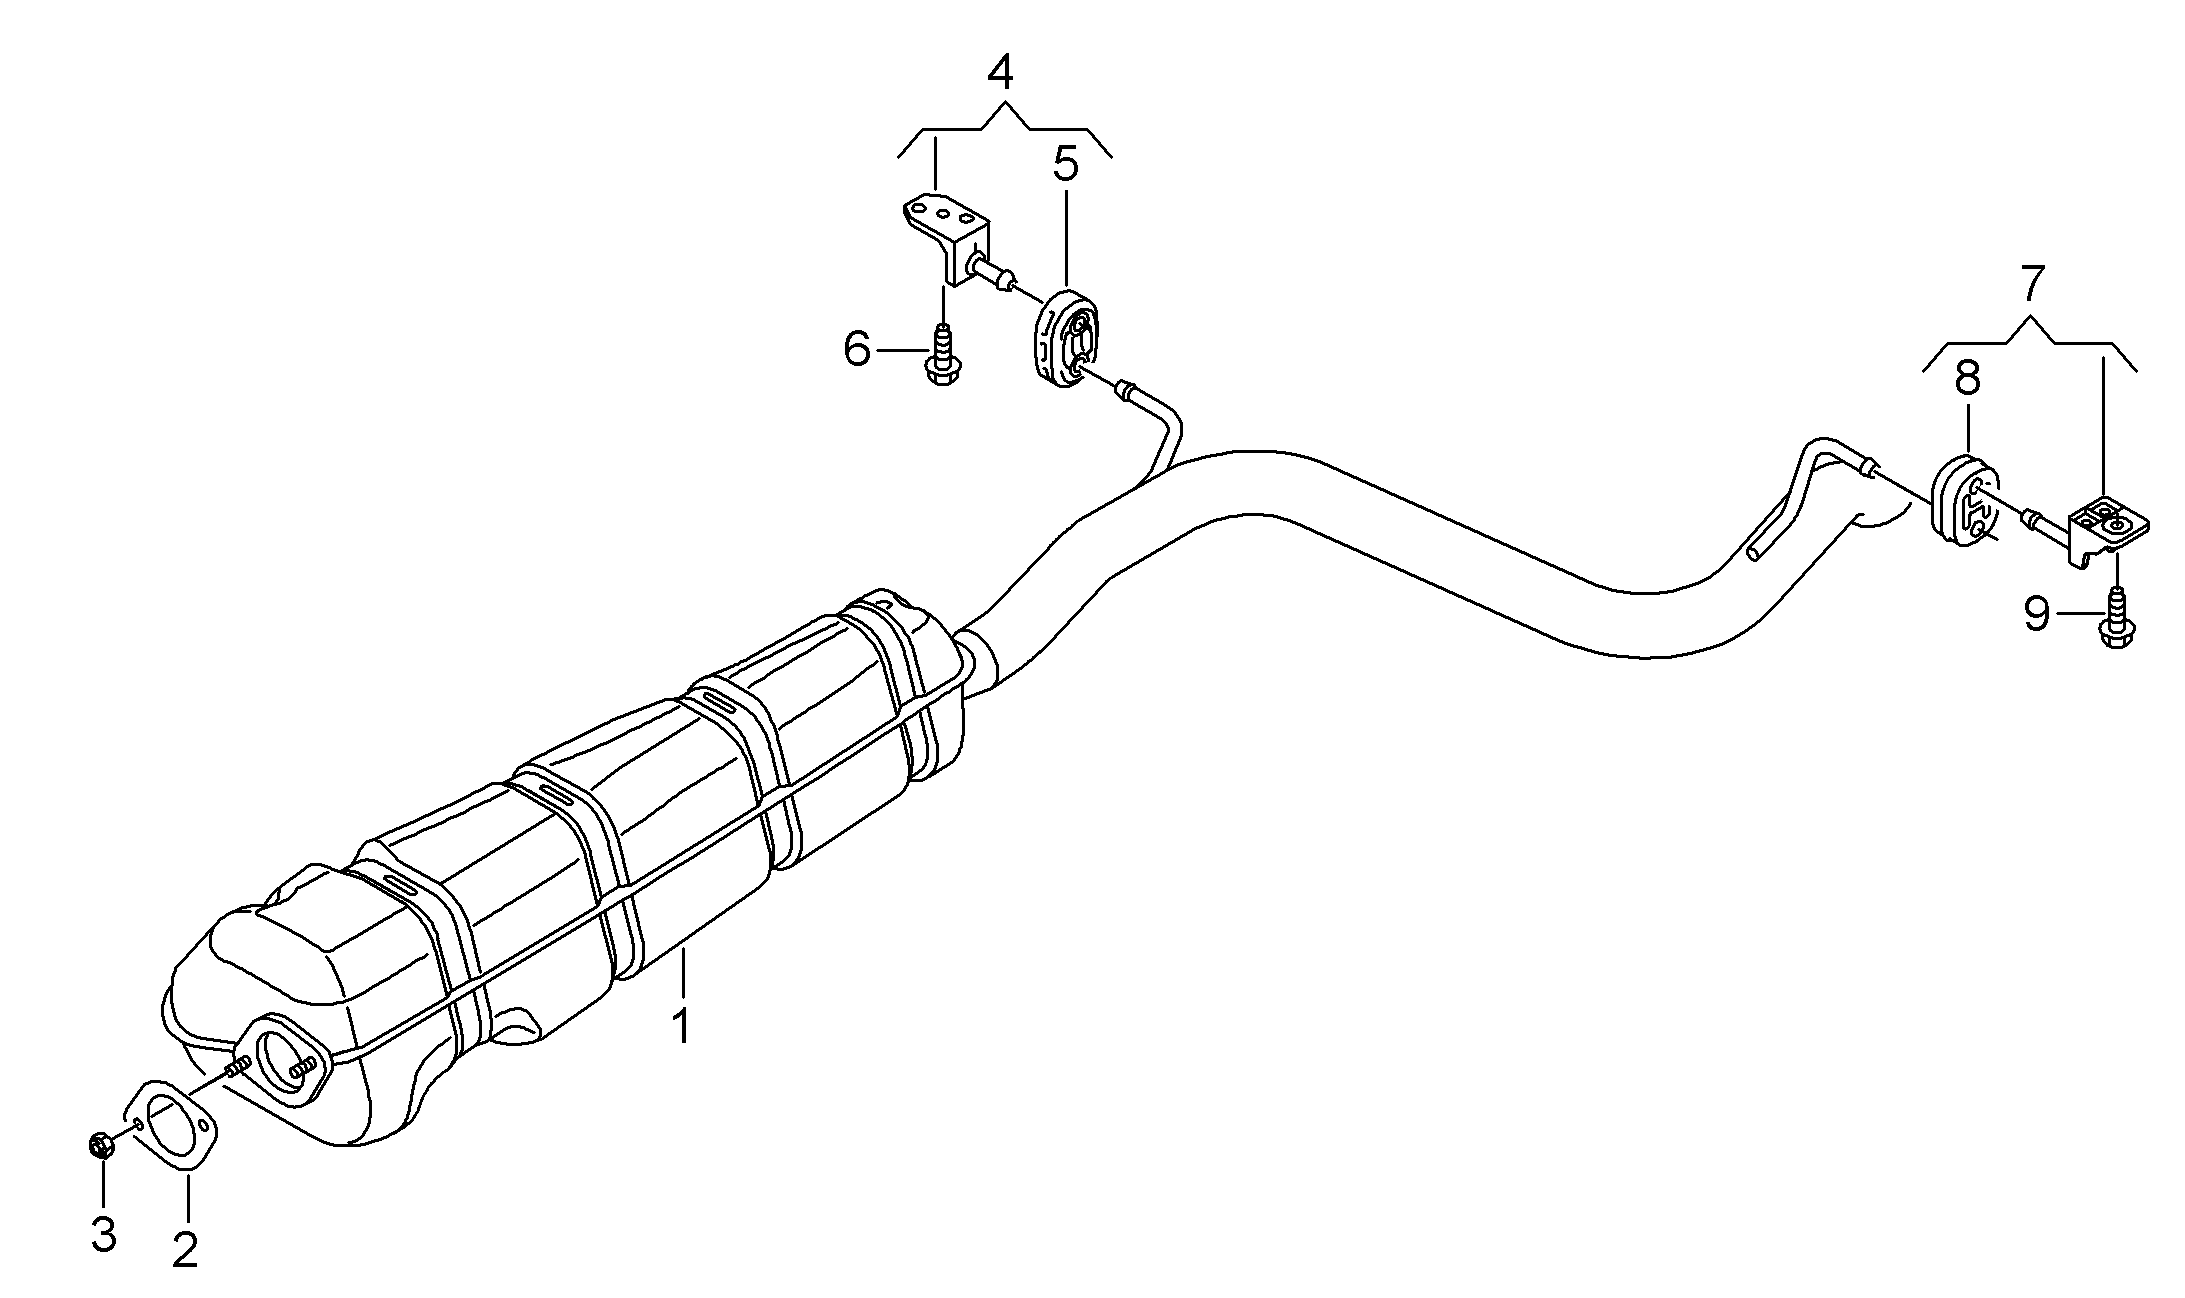 Silenciador central con<br>tubo final de escape propulsado por<br>gas natural - Golf/Variant/4Motion - golf